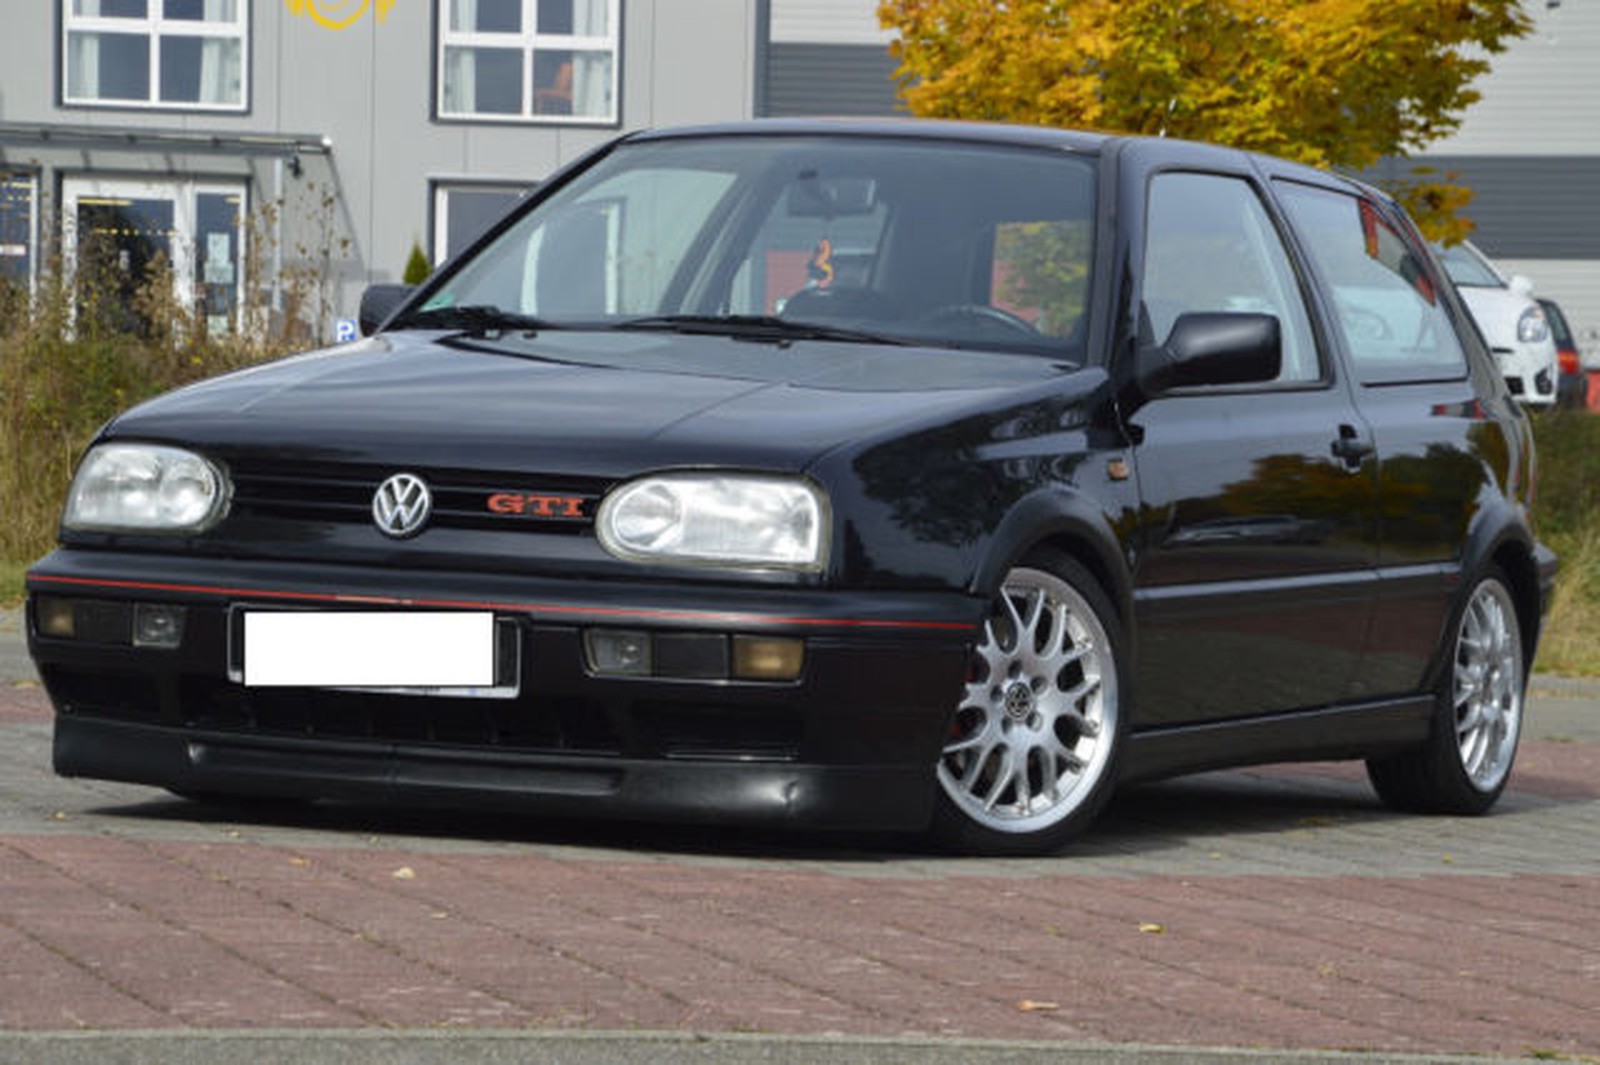 Volkswagen Golf gebraucht kaufen in Balingen Preis 4490 eur - Int.Nr.: 189  VERKAUFT